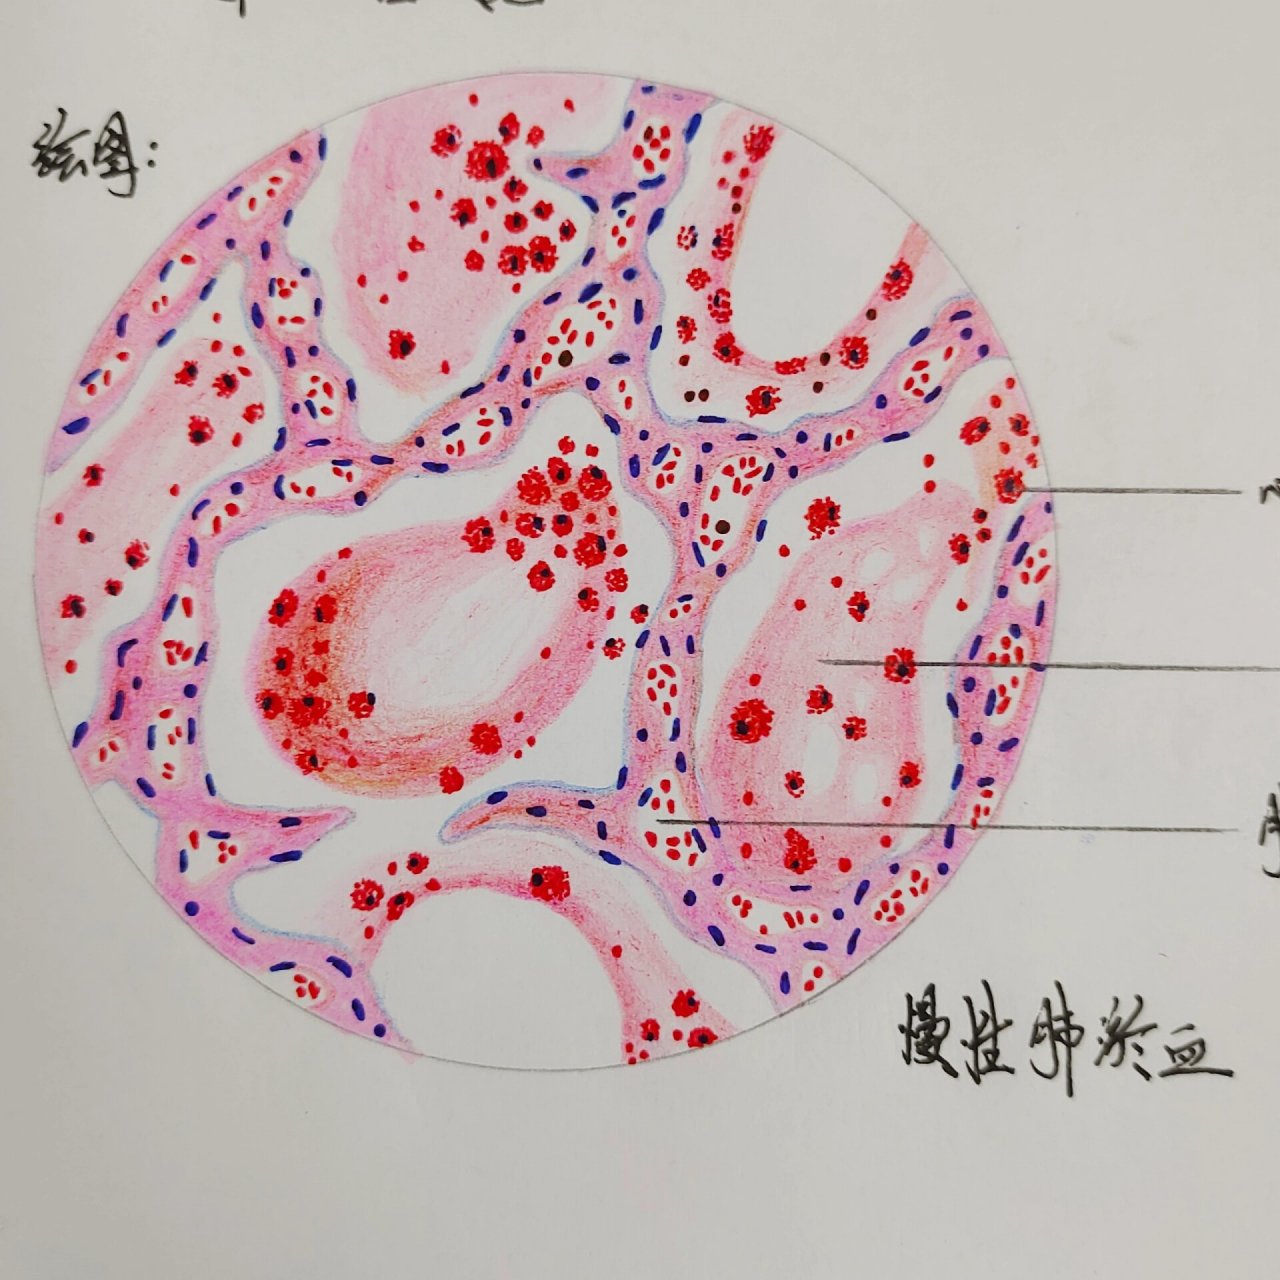 慢性肺淤血 慢性肺淤血病理切片红蓝铅笔绘图